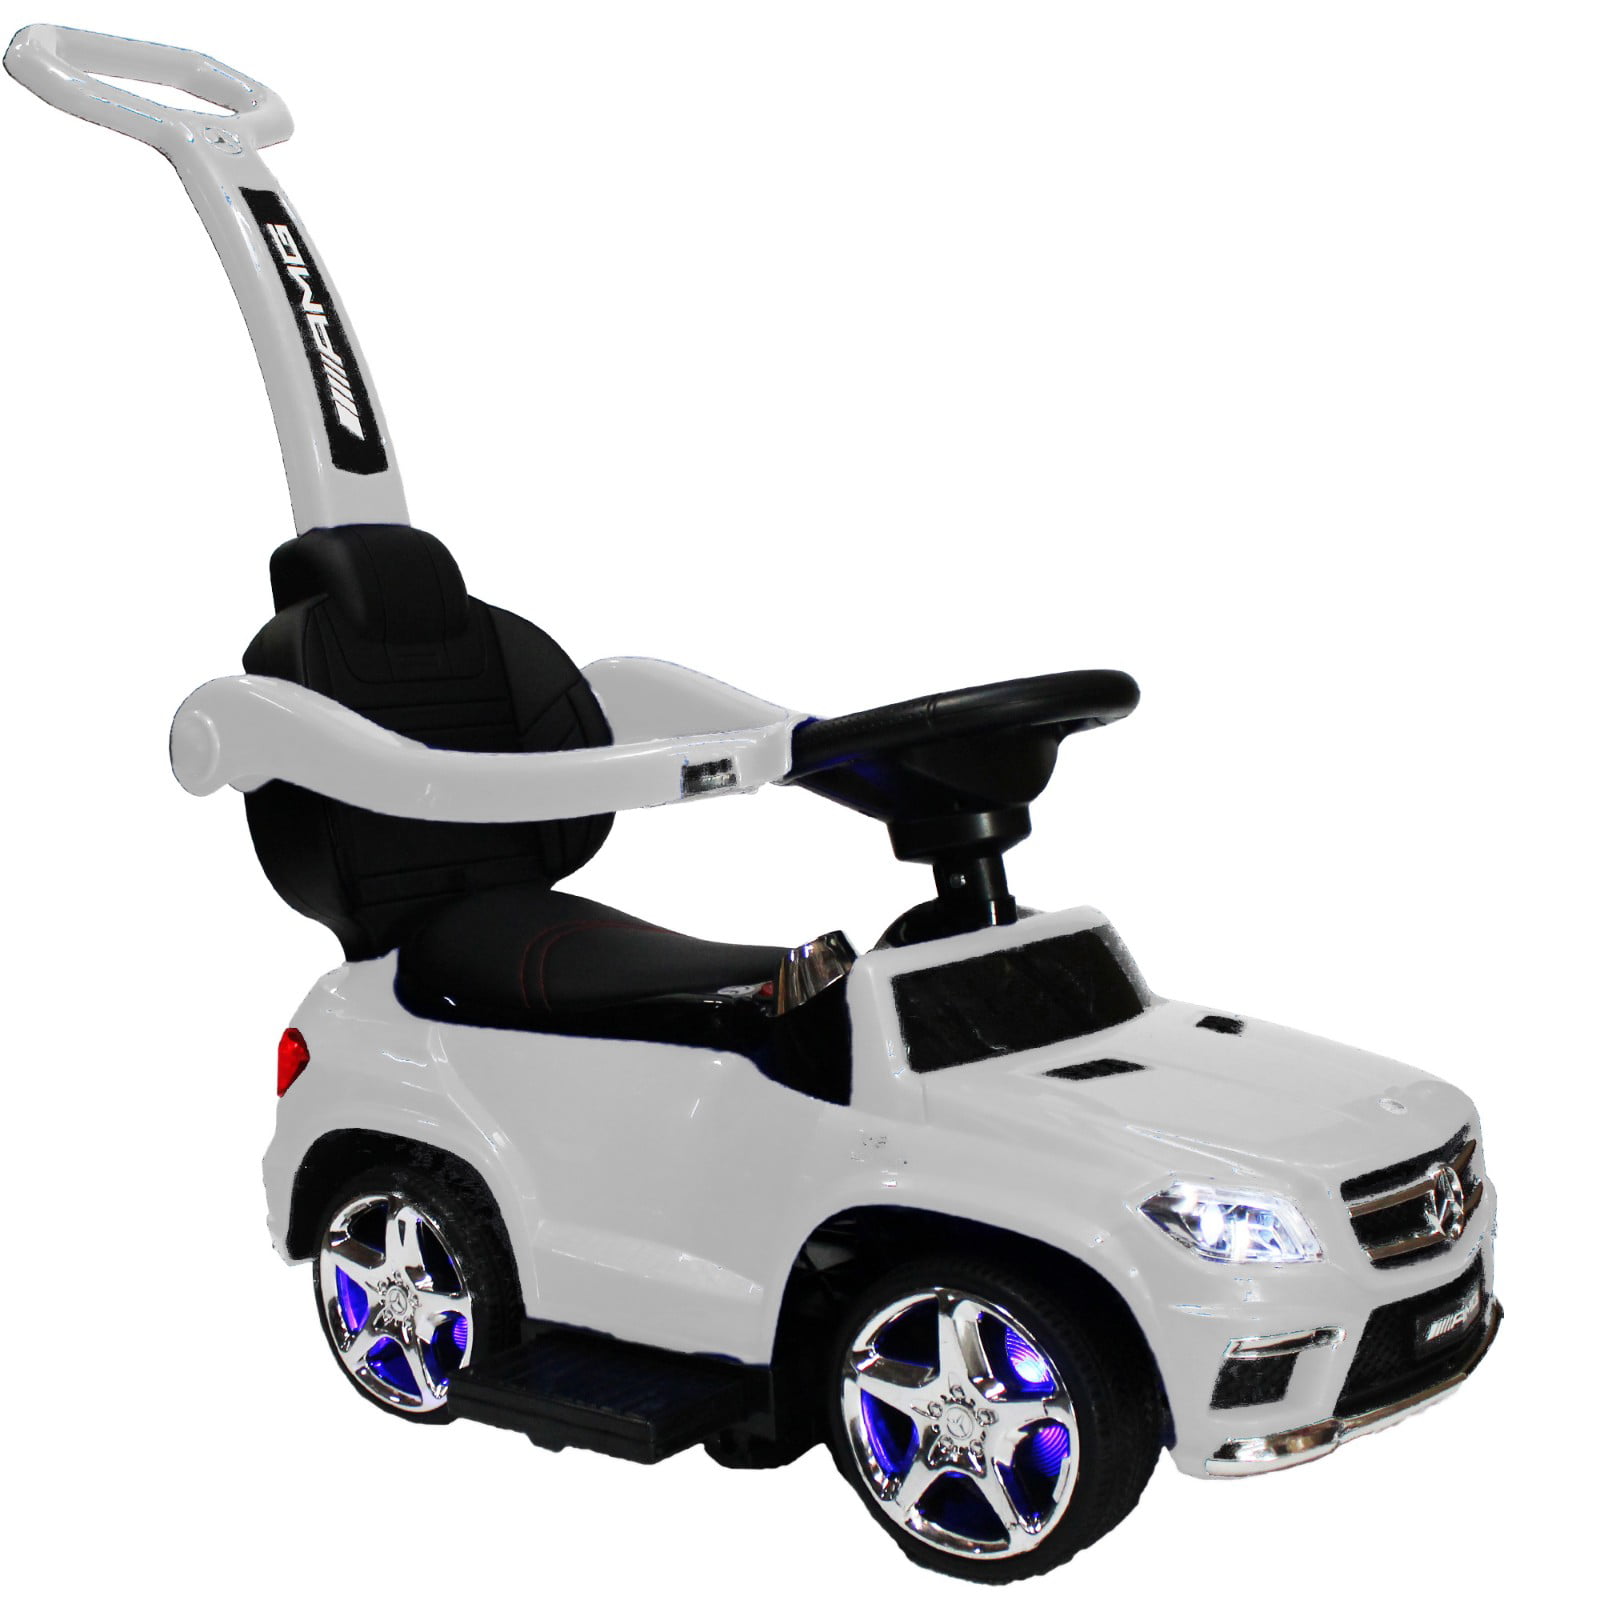 white mercedes toy car